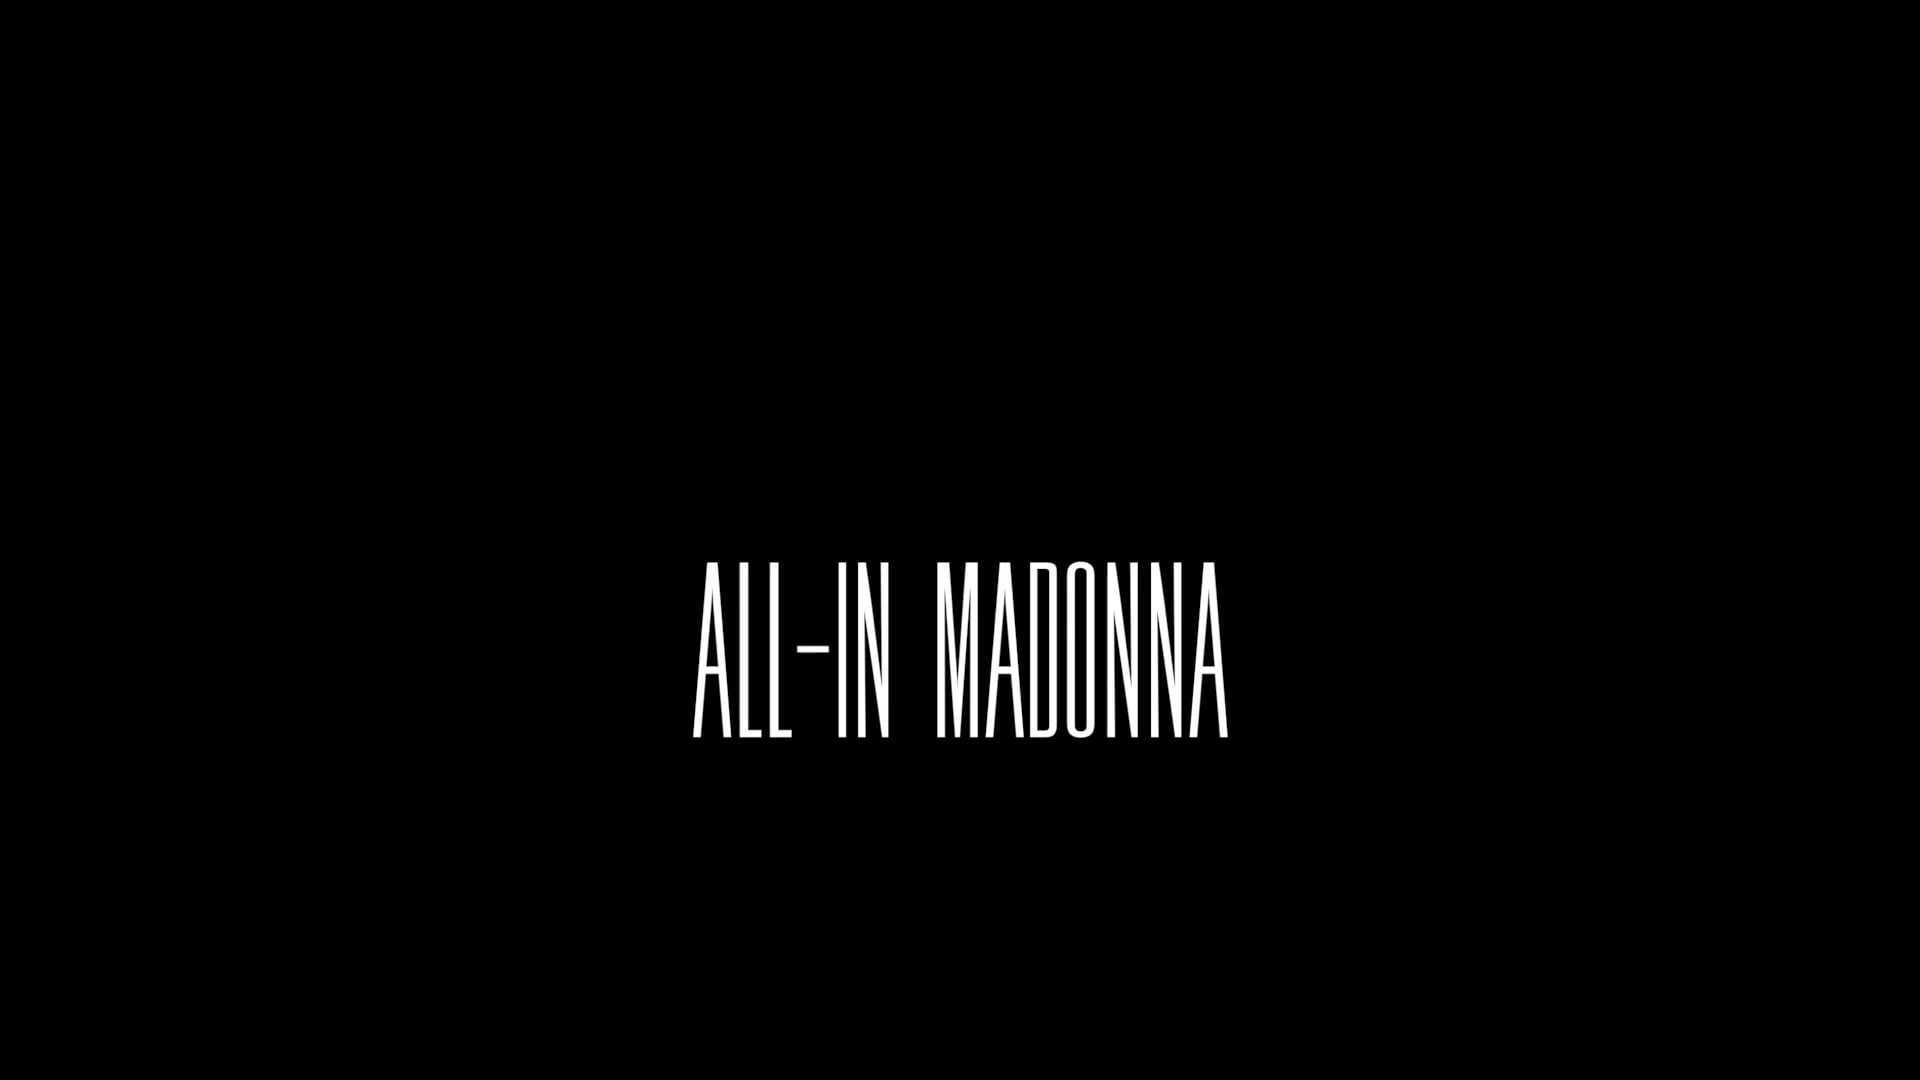 All-in Madonna - short film teaser